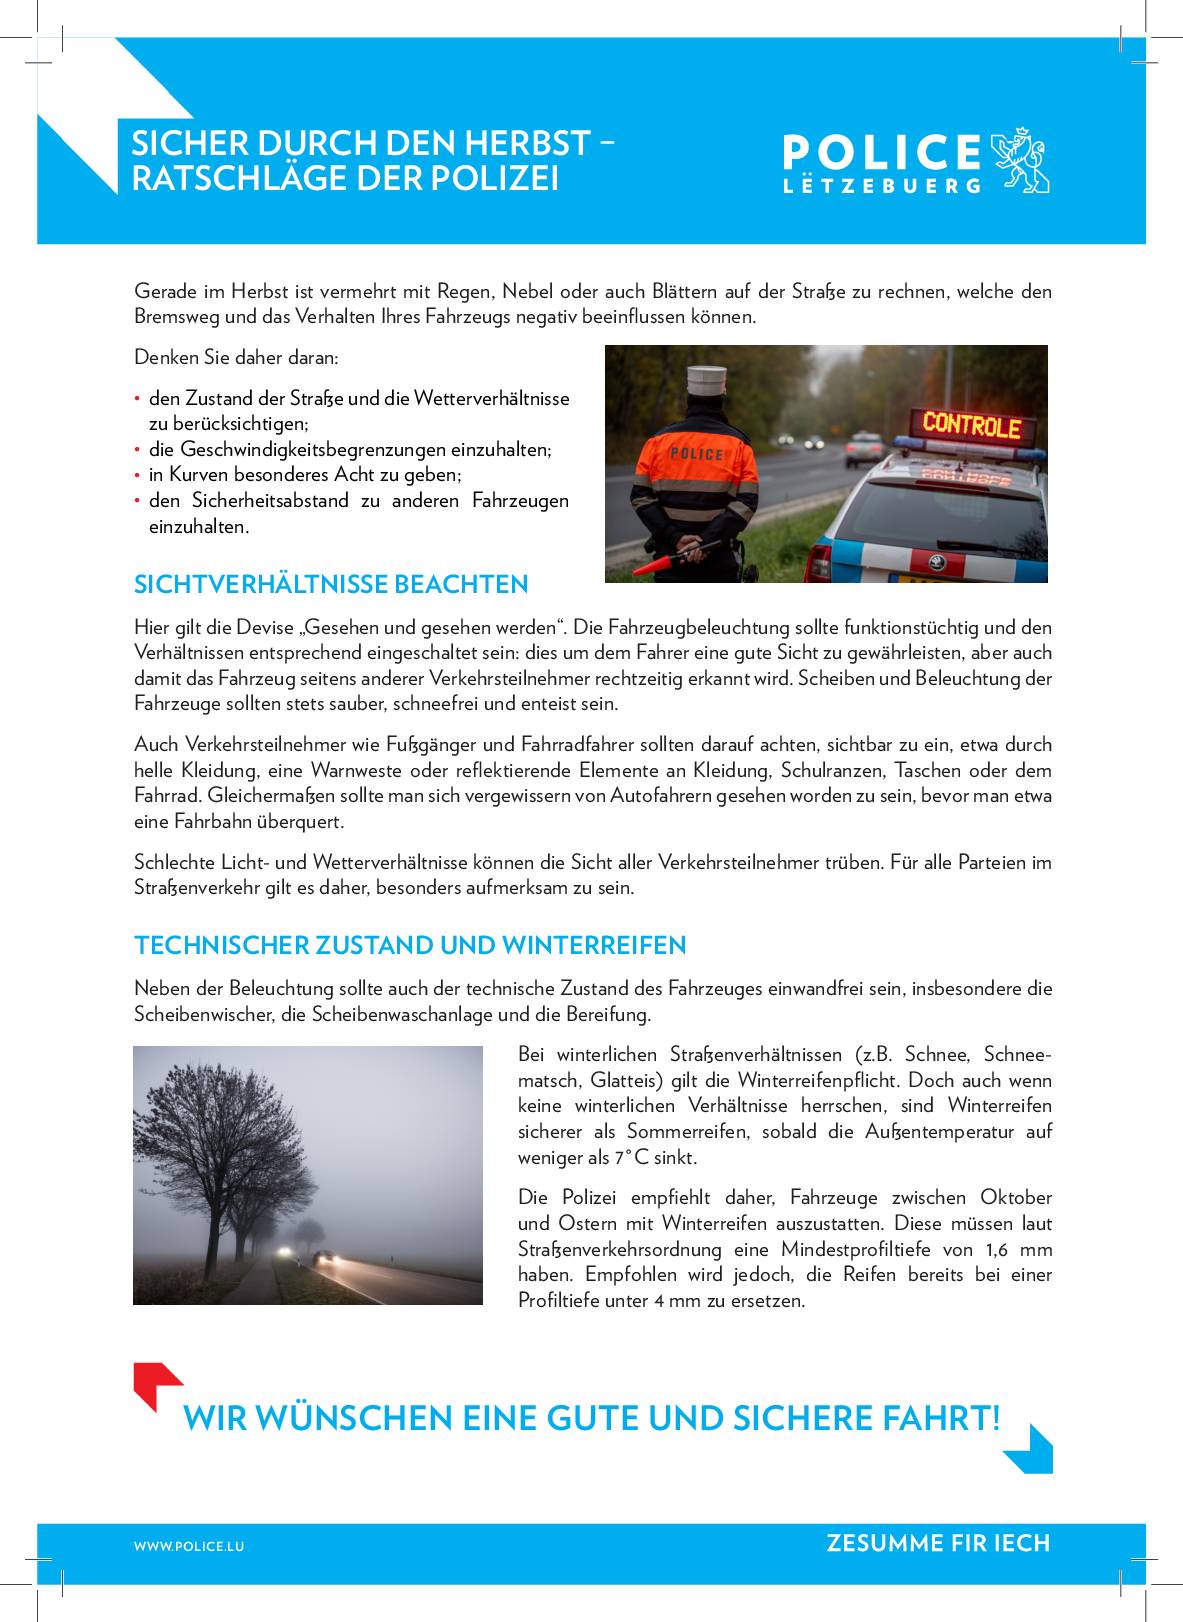 Police Luxembourg - Campagnes de prévention